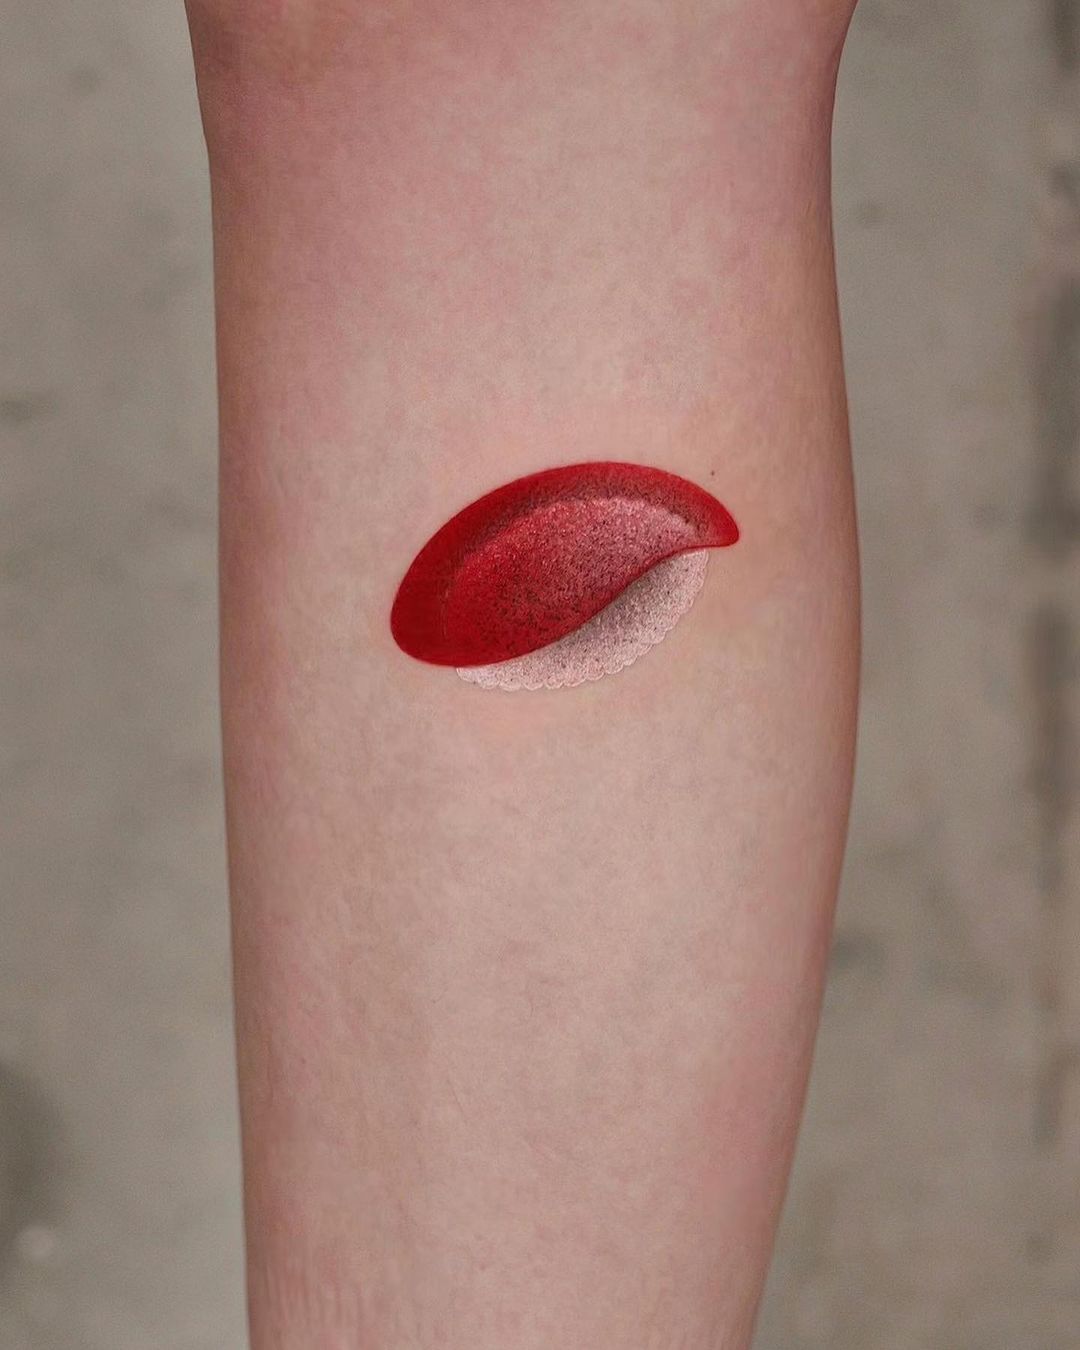 Small leg tattoo by newtattoo studio